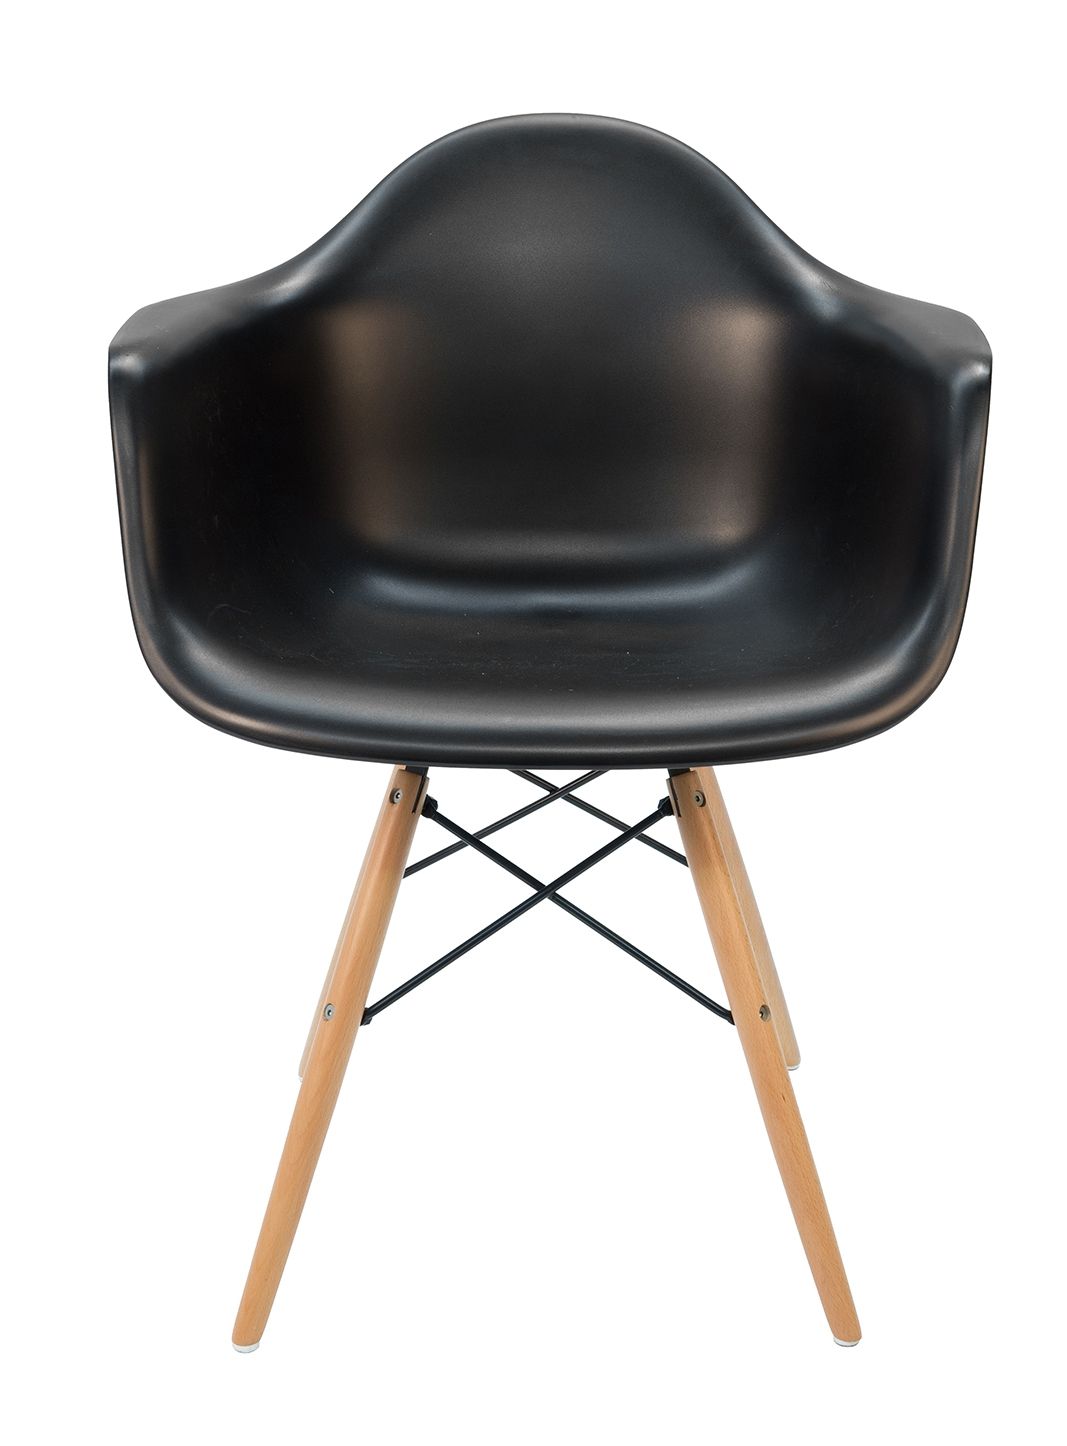 Replica Eames DAW Eiffel Chair | Black & Natural